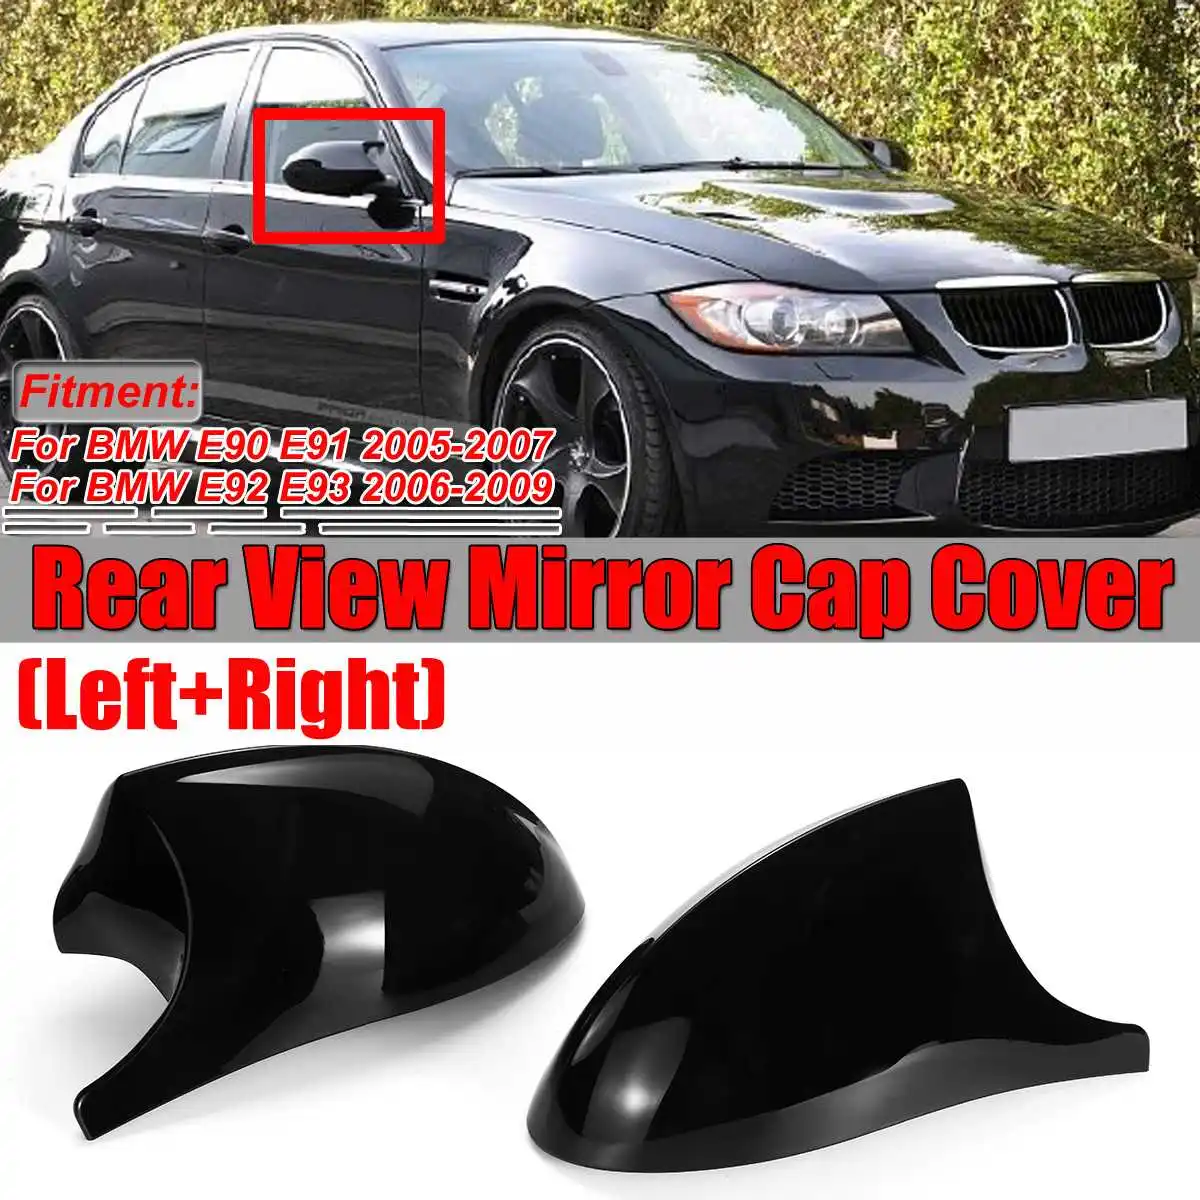 Glossy Black 1 Pair of Side Mirror Cover Cap E90 Exterior Rear View Mirror Rearview for BMW E90 E91 325i 325xi 328i 330i E92 E93 2005-2008 